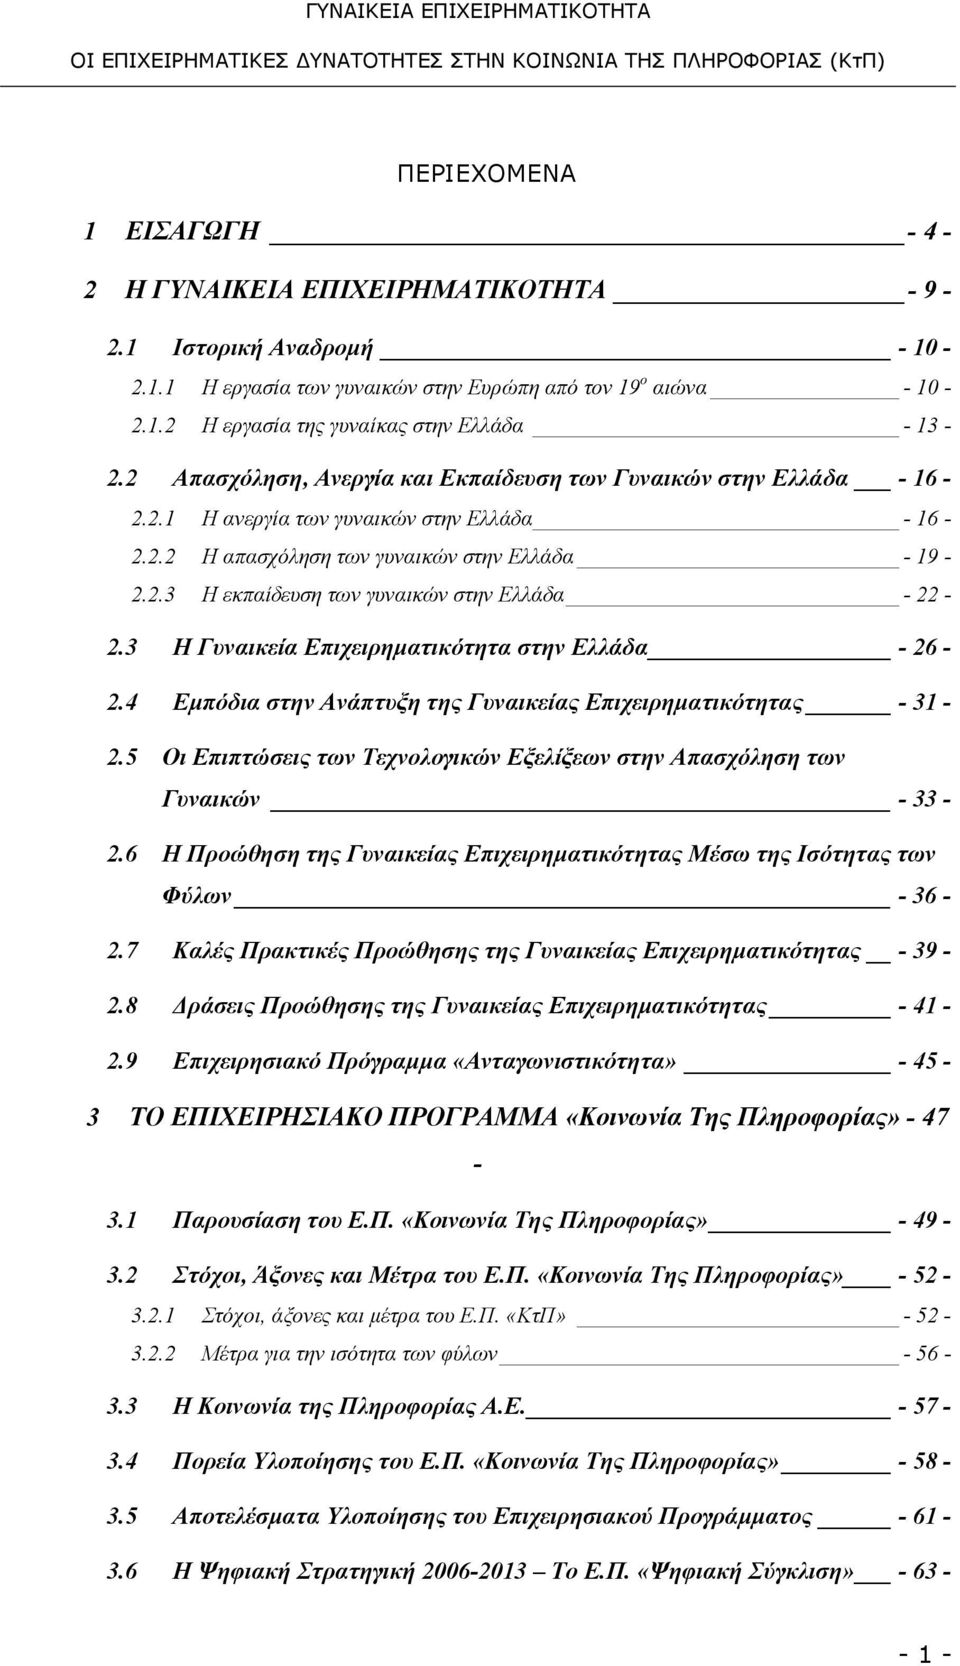 3 Η Γυναικεία Επιχειρηματικότητα στην Ελλάδα - 26-2.4 Εμπόδια στην Ανάπτυξη της Γυναικείας Επιχειρηματικότητας - 31-2.5 Οι Επιπτώσεις των Τεχνολογικών Εξελίξεων στην Απασχόληση των Γυναικών - 33-2.